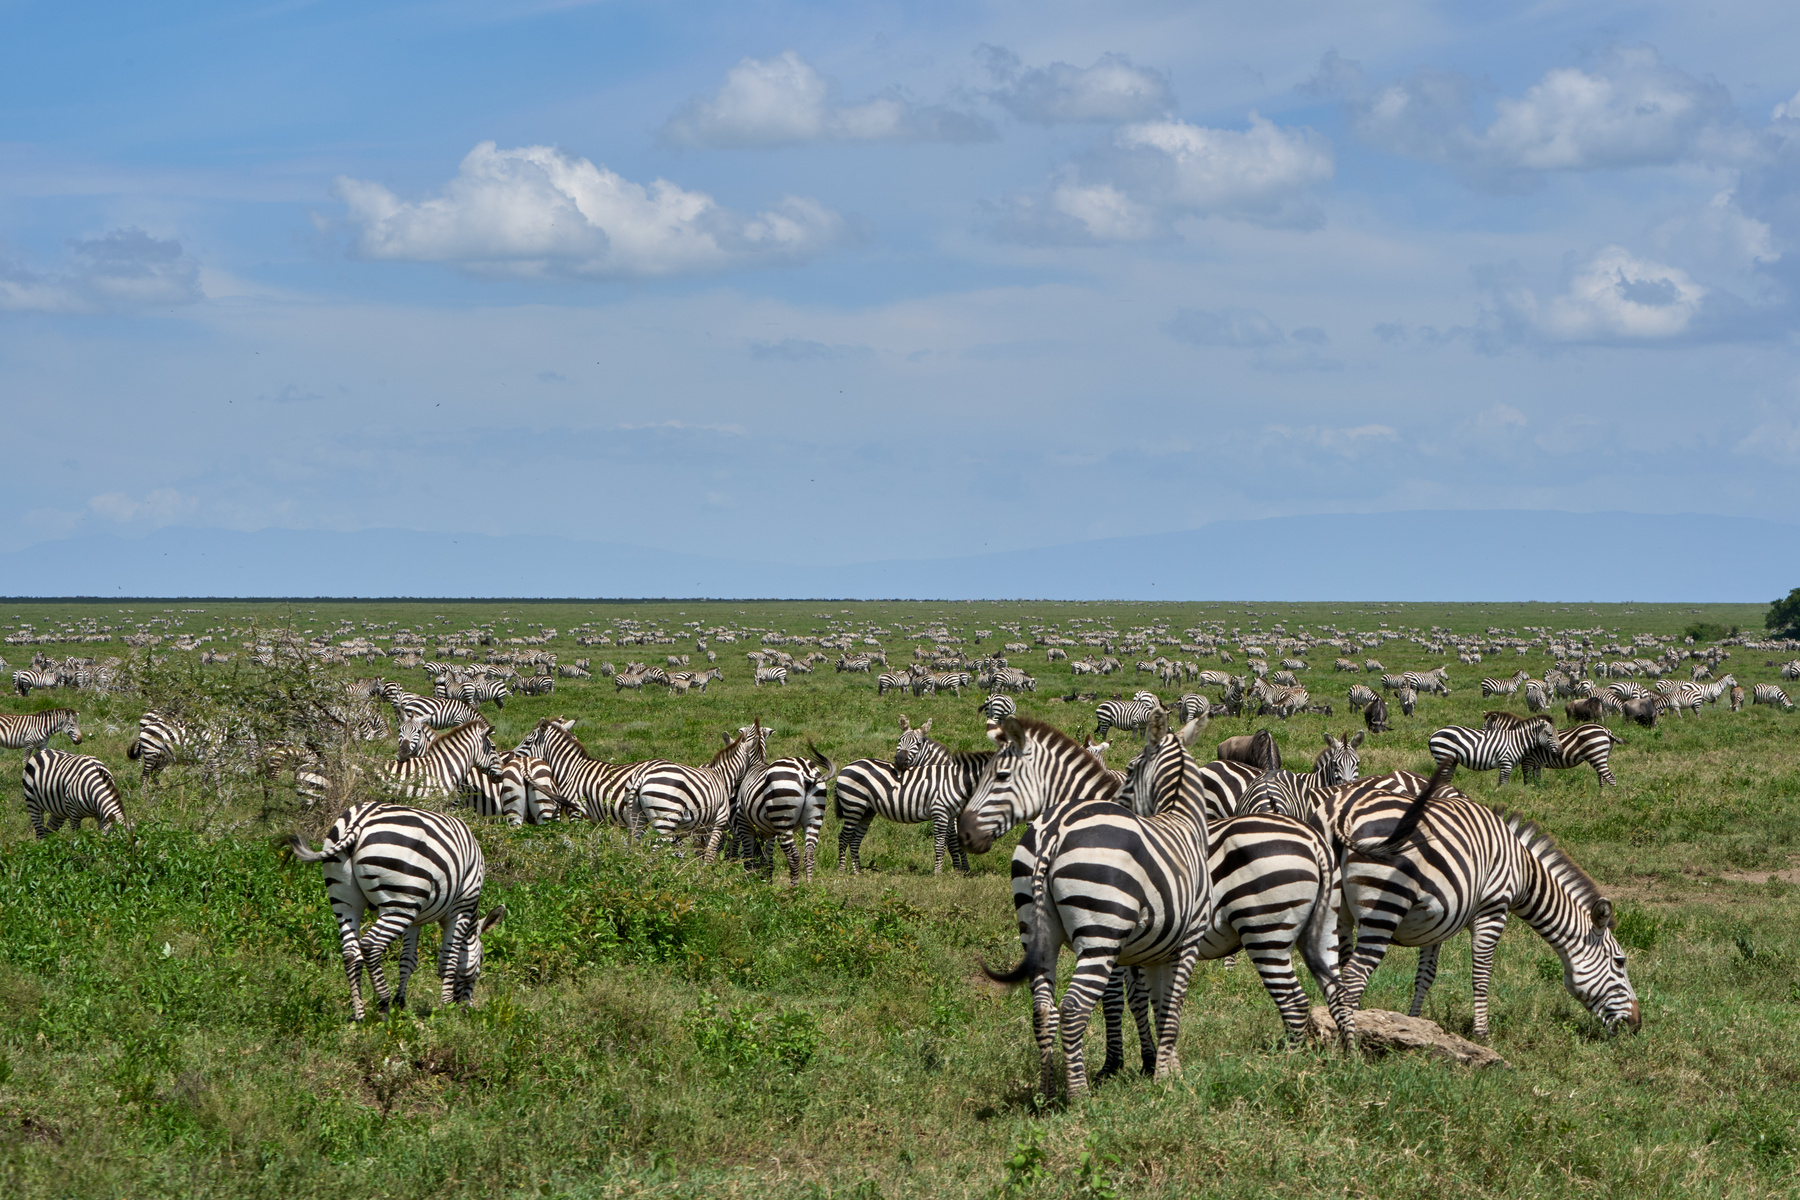 Много зебр Танзания Нгоронгоро Африка природа животные зебры великая миграция